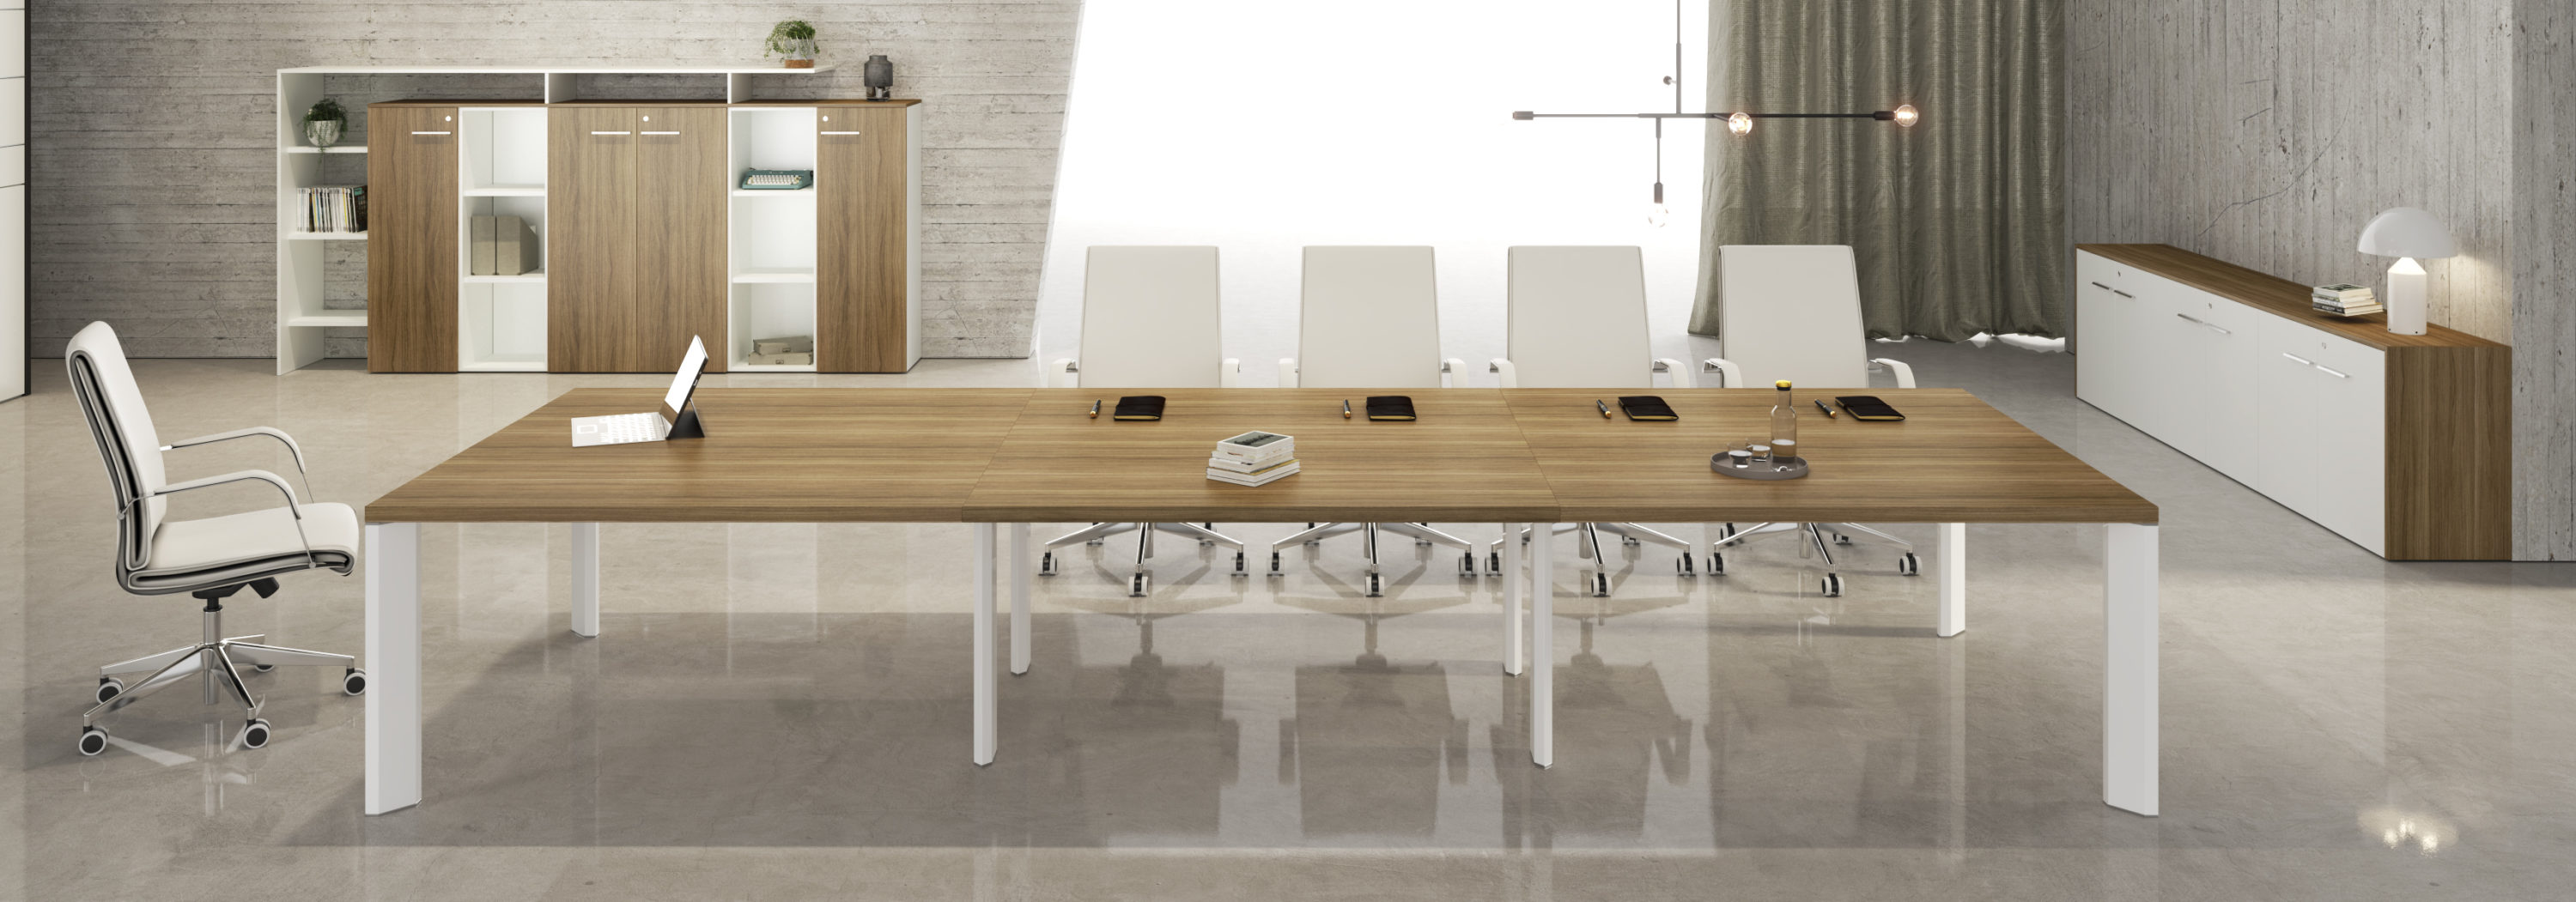 tavolo per riunione in legno